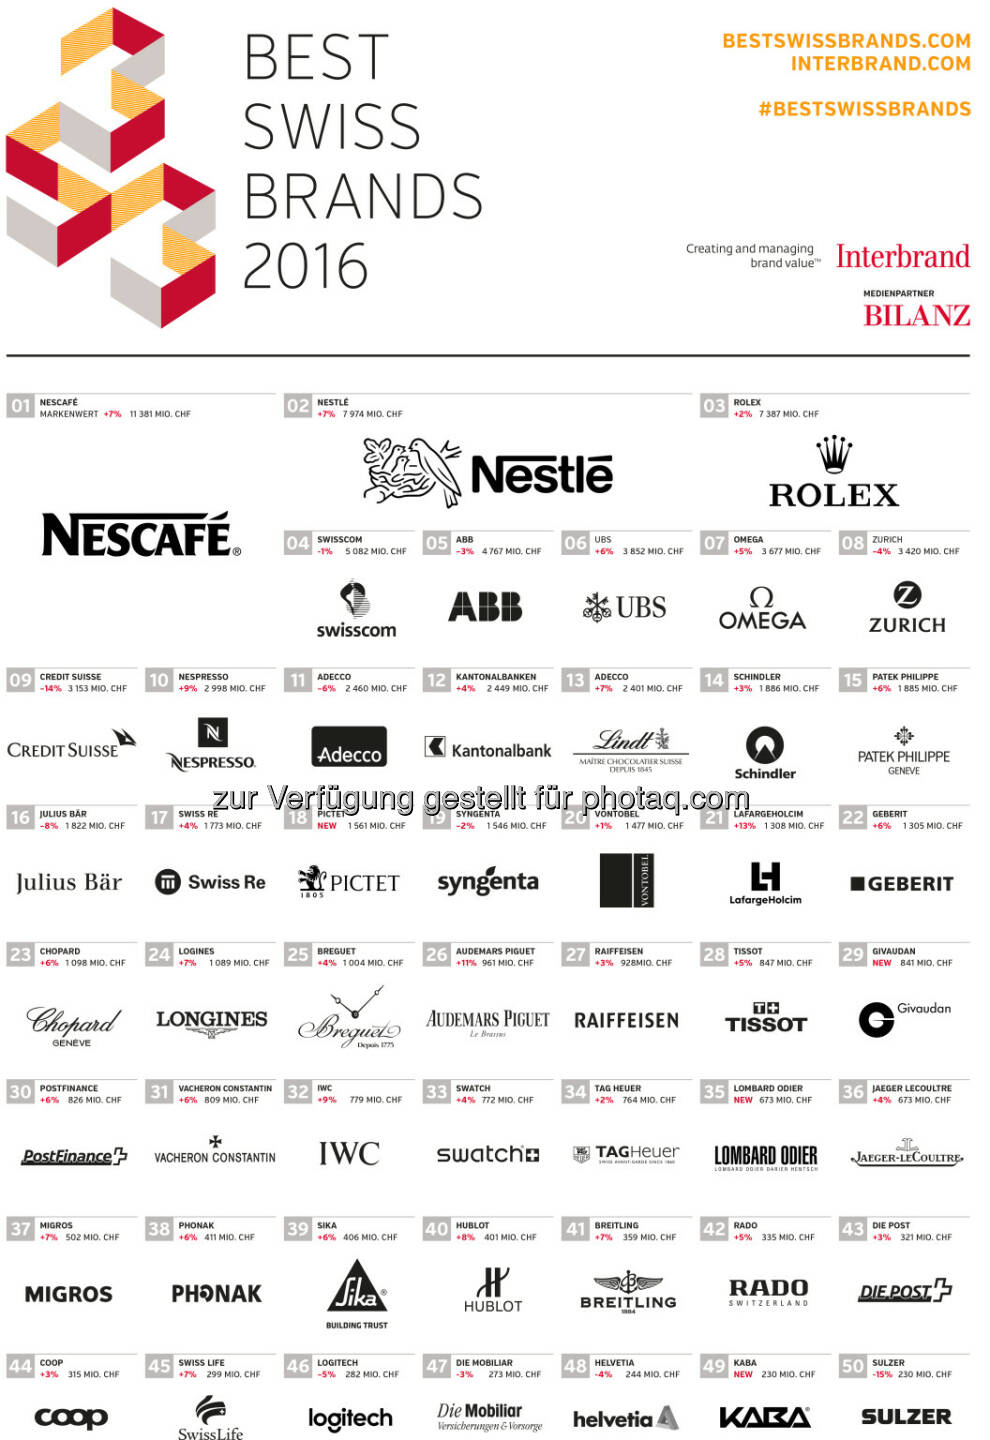 Best Swiss Brands 2016 Ranking : Interbrand kürt die wertvollsten Marken der Schweiz : Fotocredit: obs/Interbrand